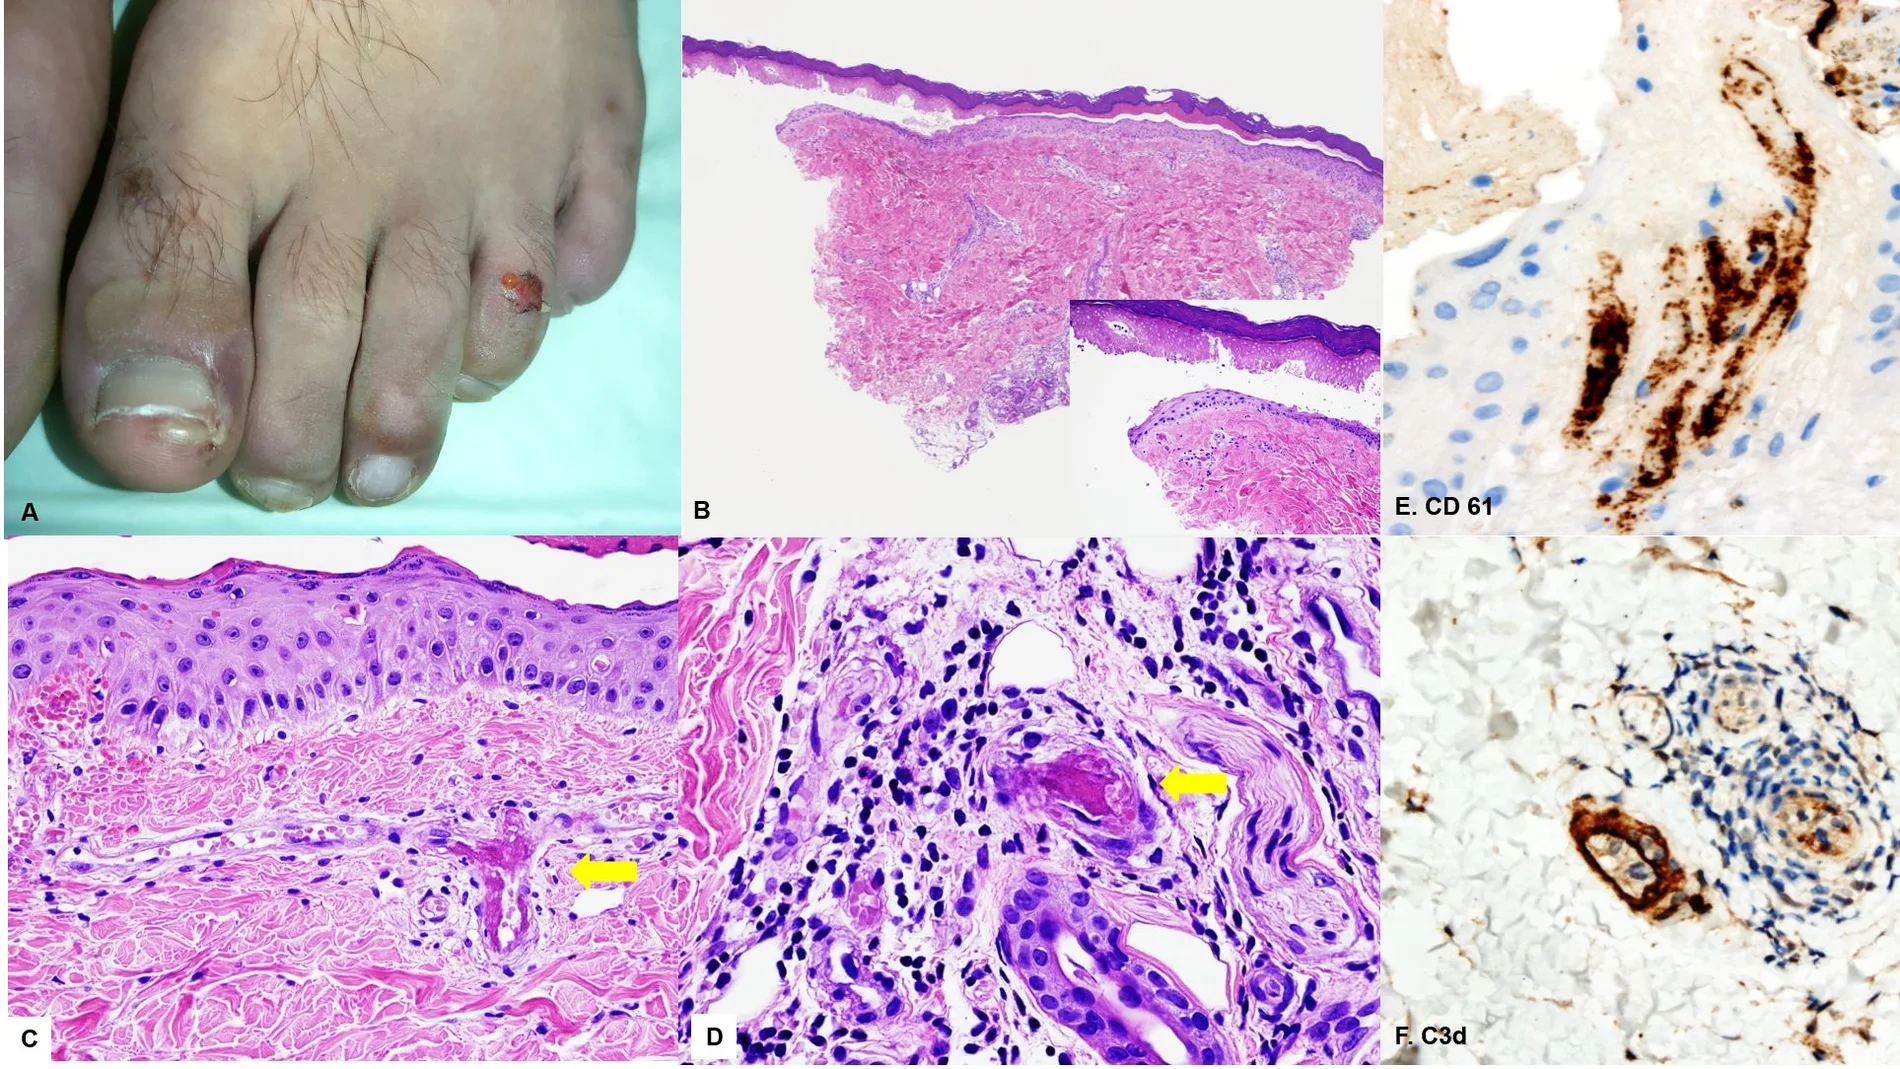 Determinadas lesiones en la piel pueden considerarse como las primeras manifestaciones de Covid-19 aunque no presenten sintomatología del SARS-CoV-2